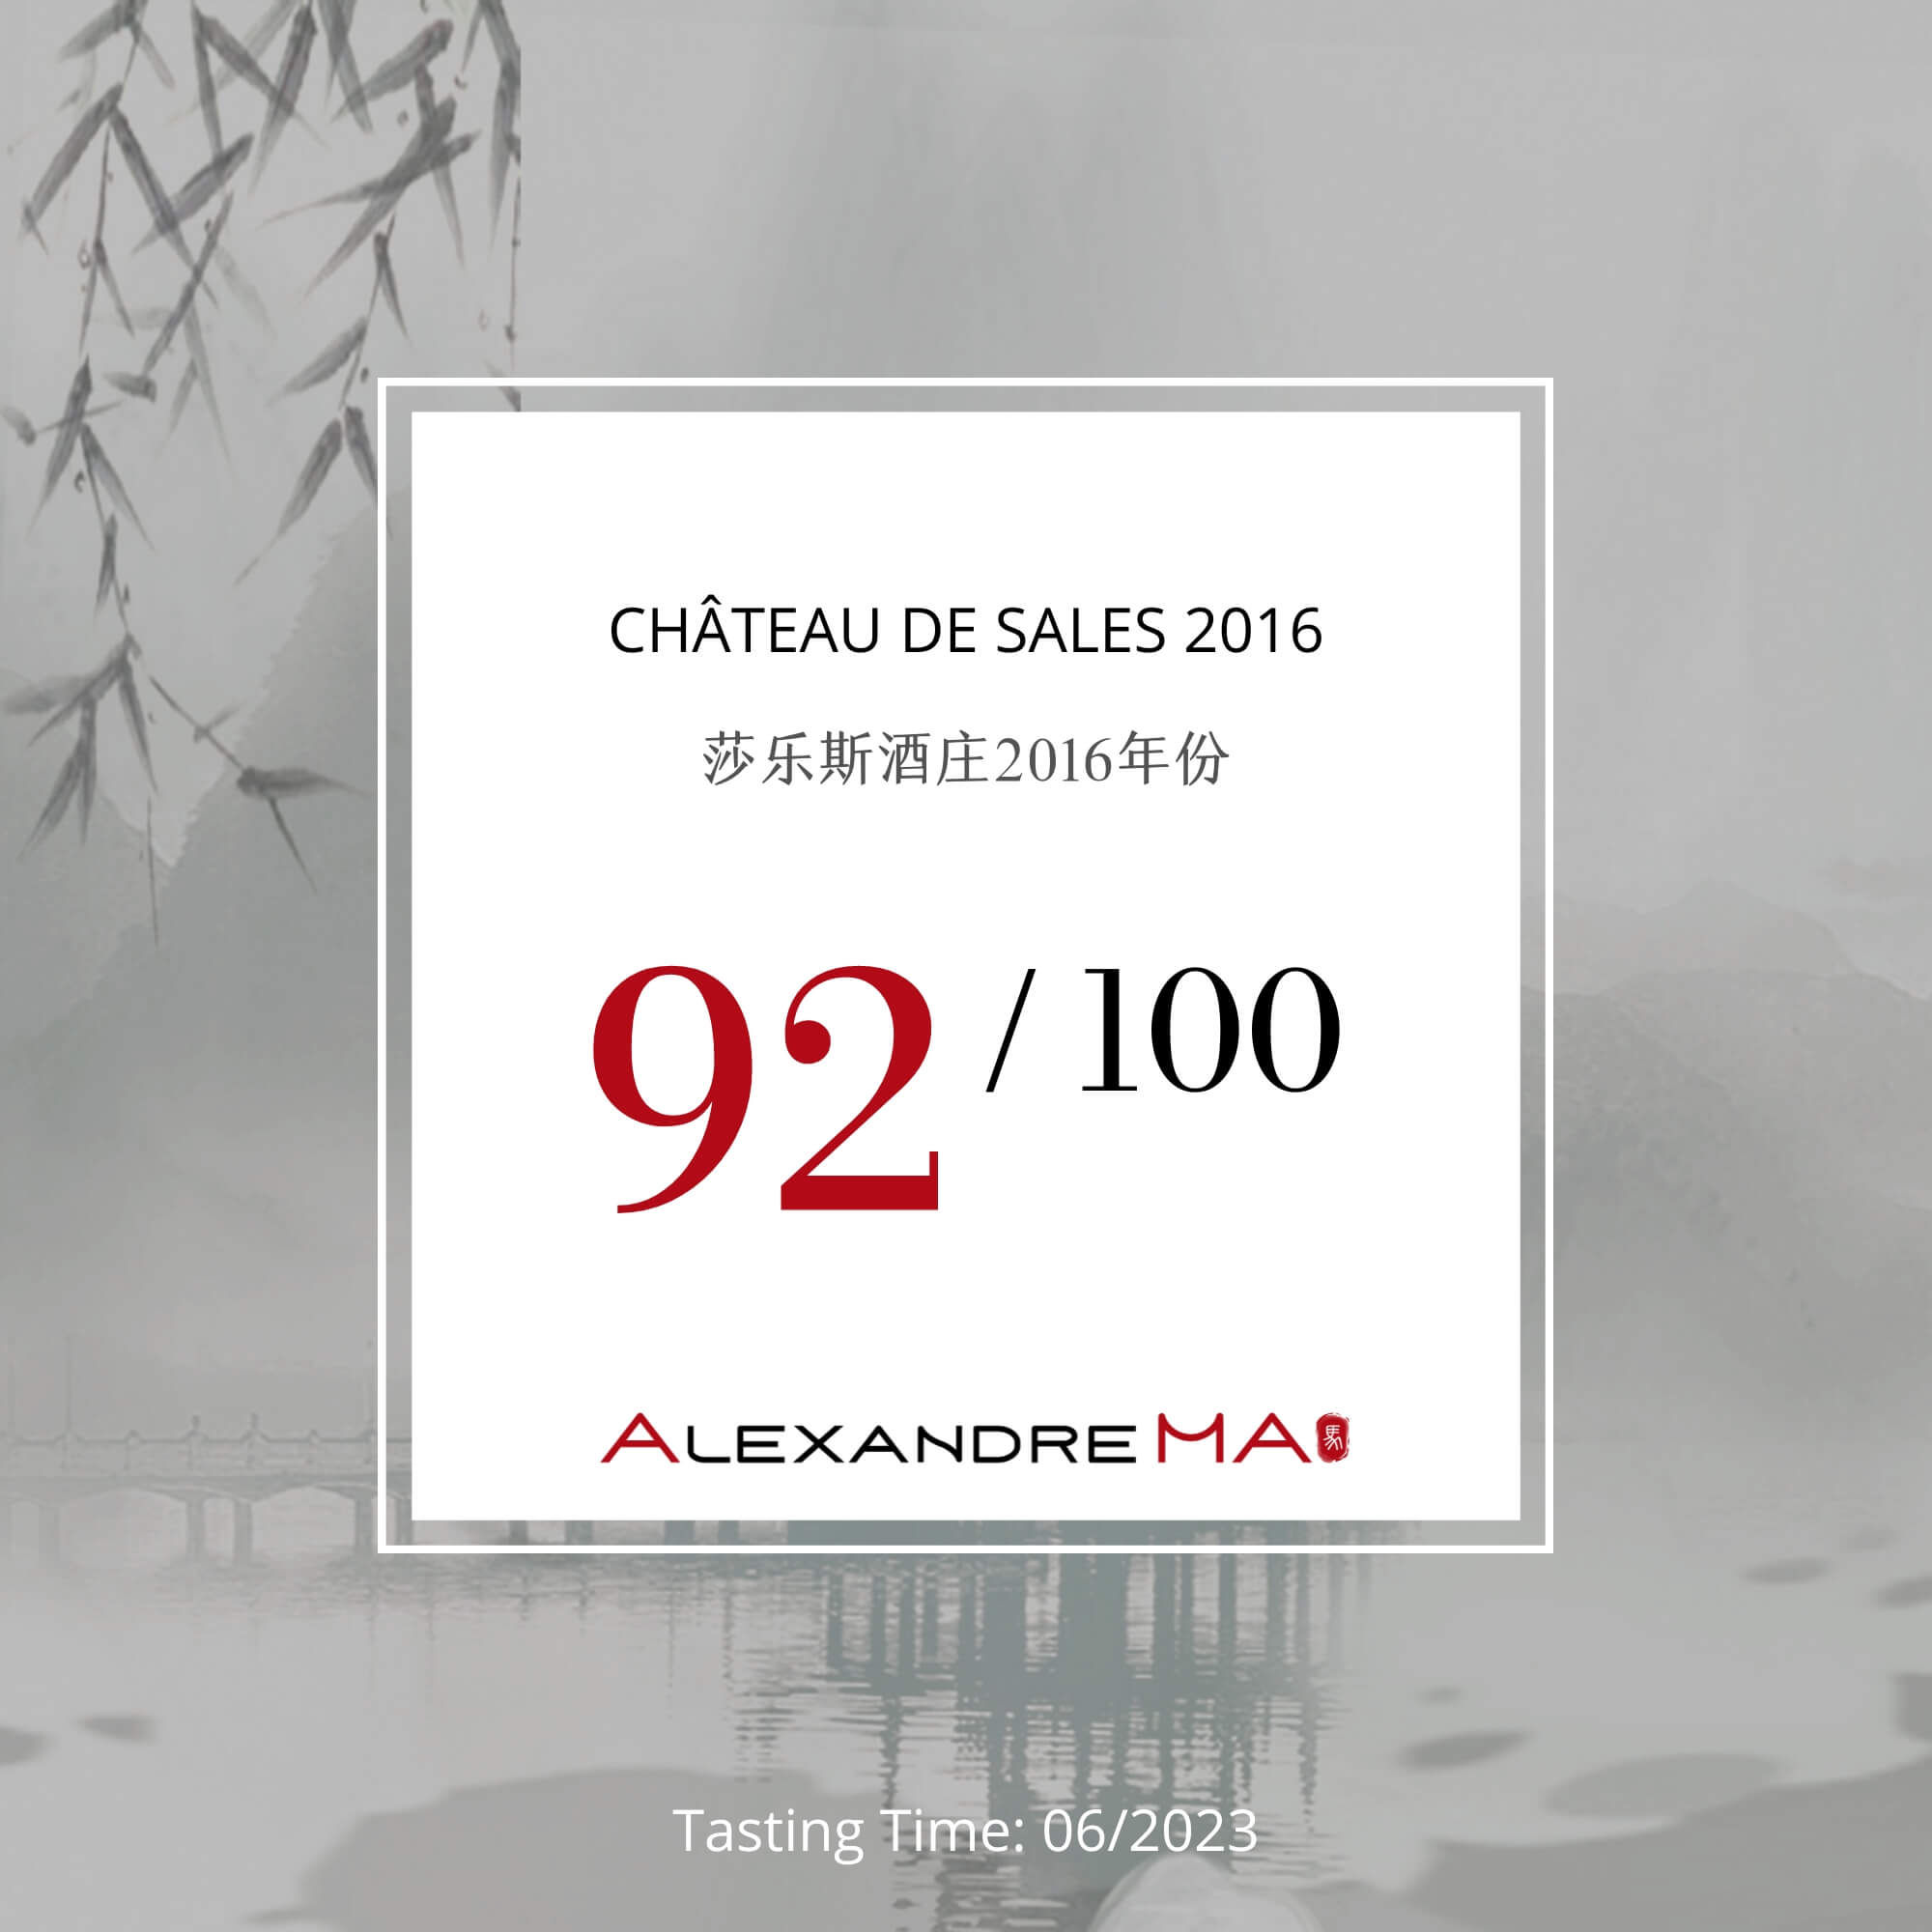 Château de Sales 2016 莎乐斯酒庄 - Alexandre Ma